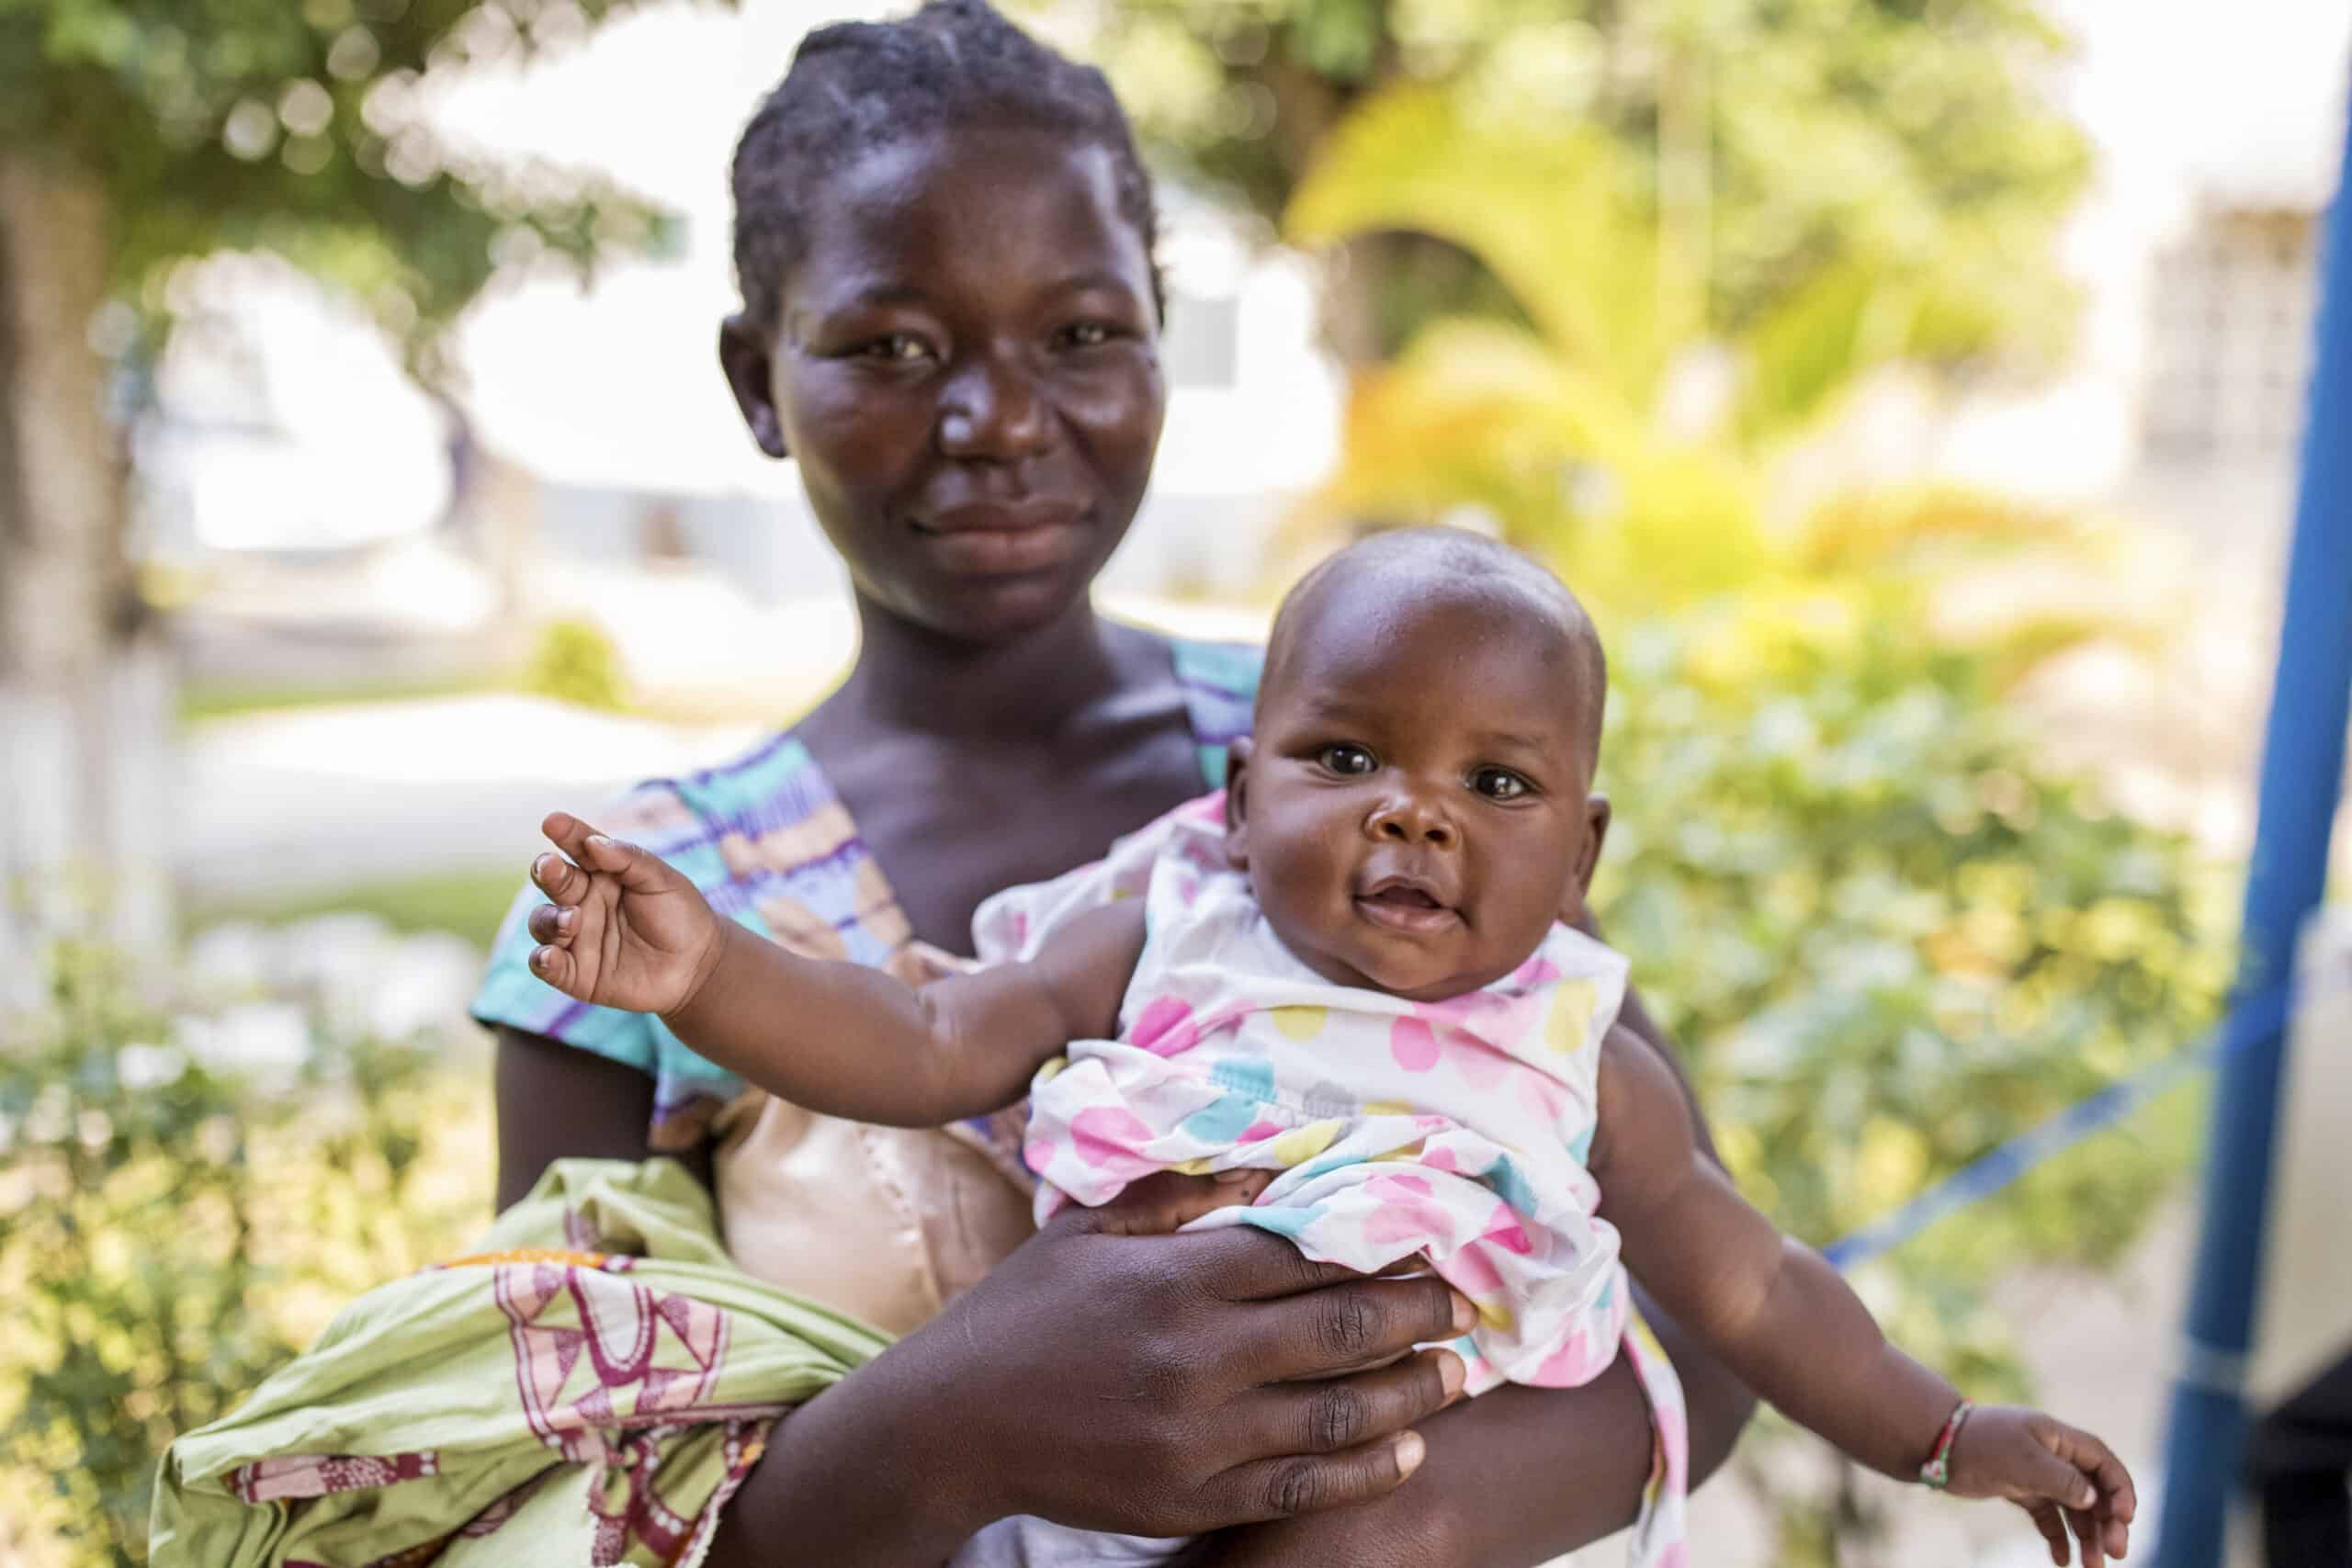 Eine junge Afrikanerin hält ein lächelndes Baby auf einem Arm. Sie sind im Freien, im Hintergrund sind verschwommene grüne Bäume zu sehen. Das Baby trägt ein rosa-weißes Outfit und die Frau blickt in die Kamera. © Fotografie Tomas Rodriguez